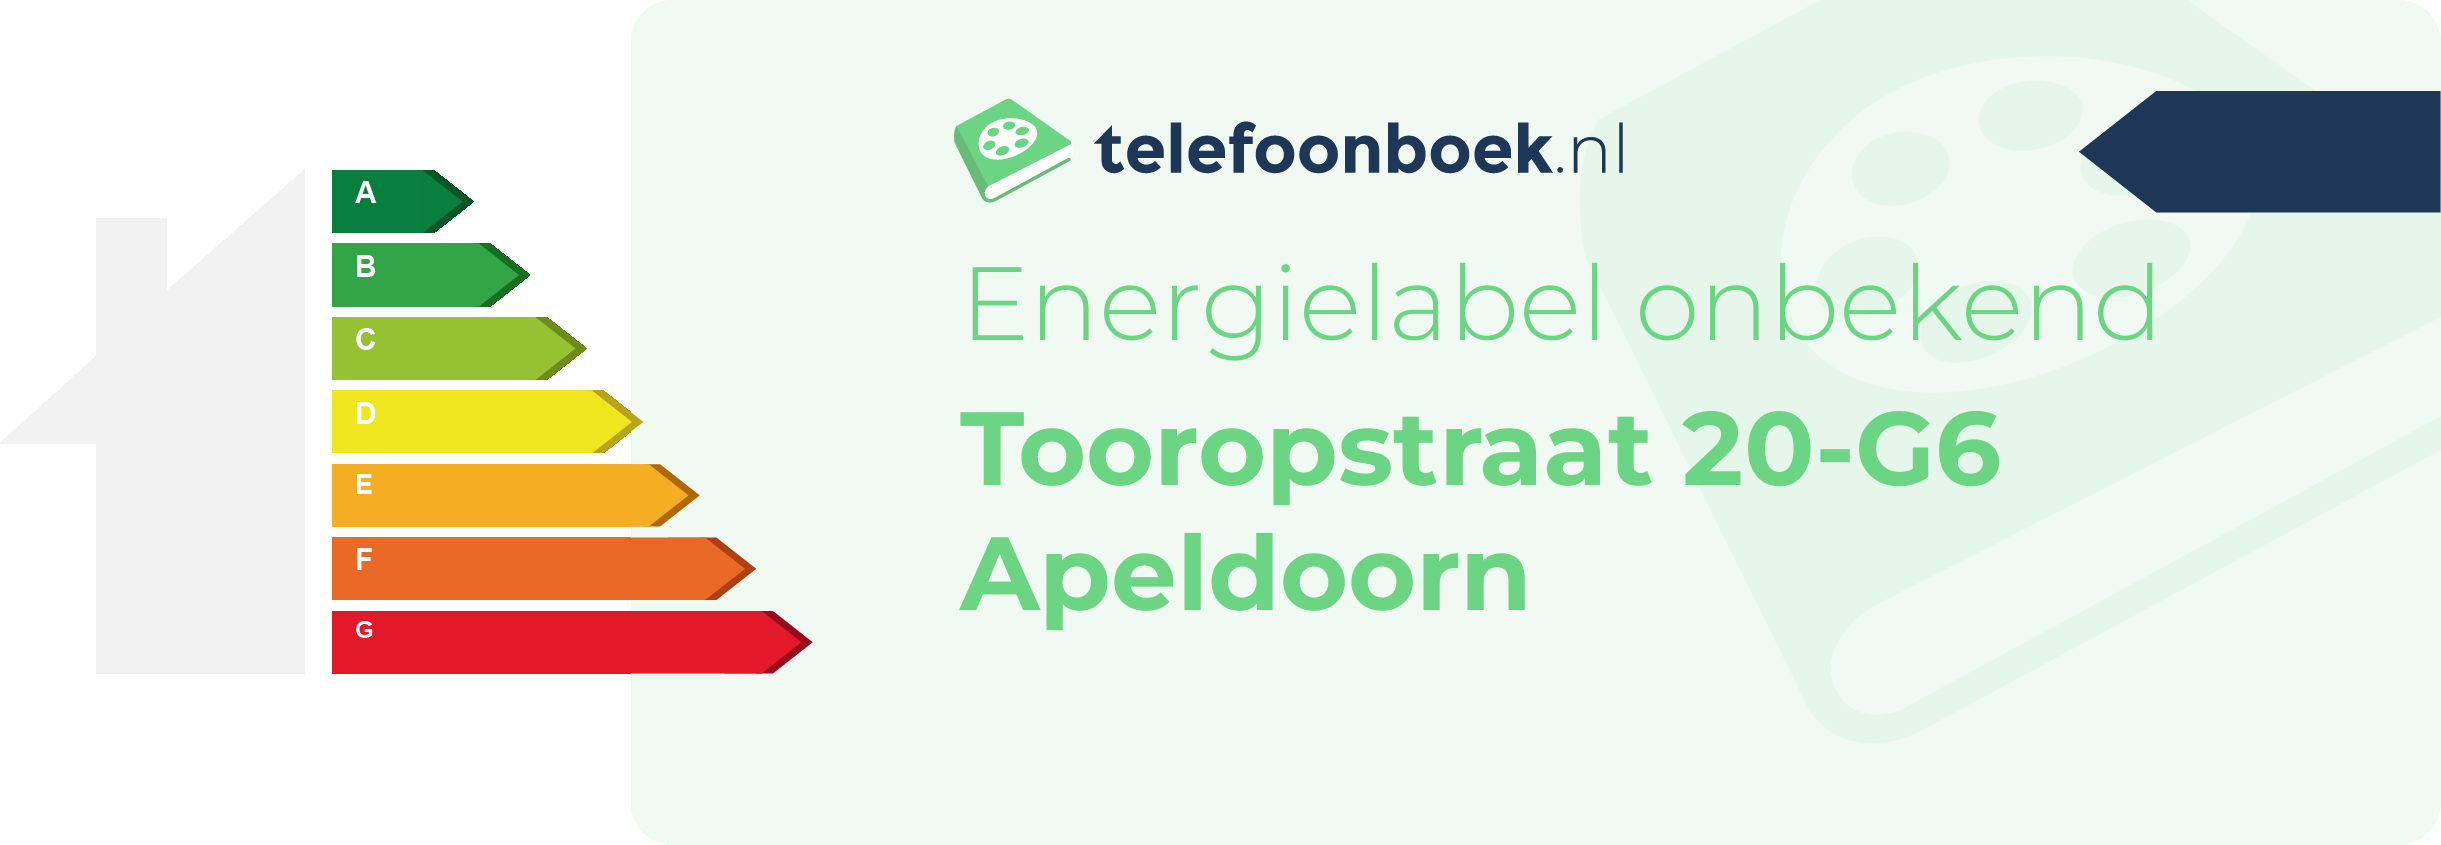 Energielabel Tooropstraat 20-G6 Apeldoorn